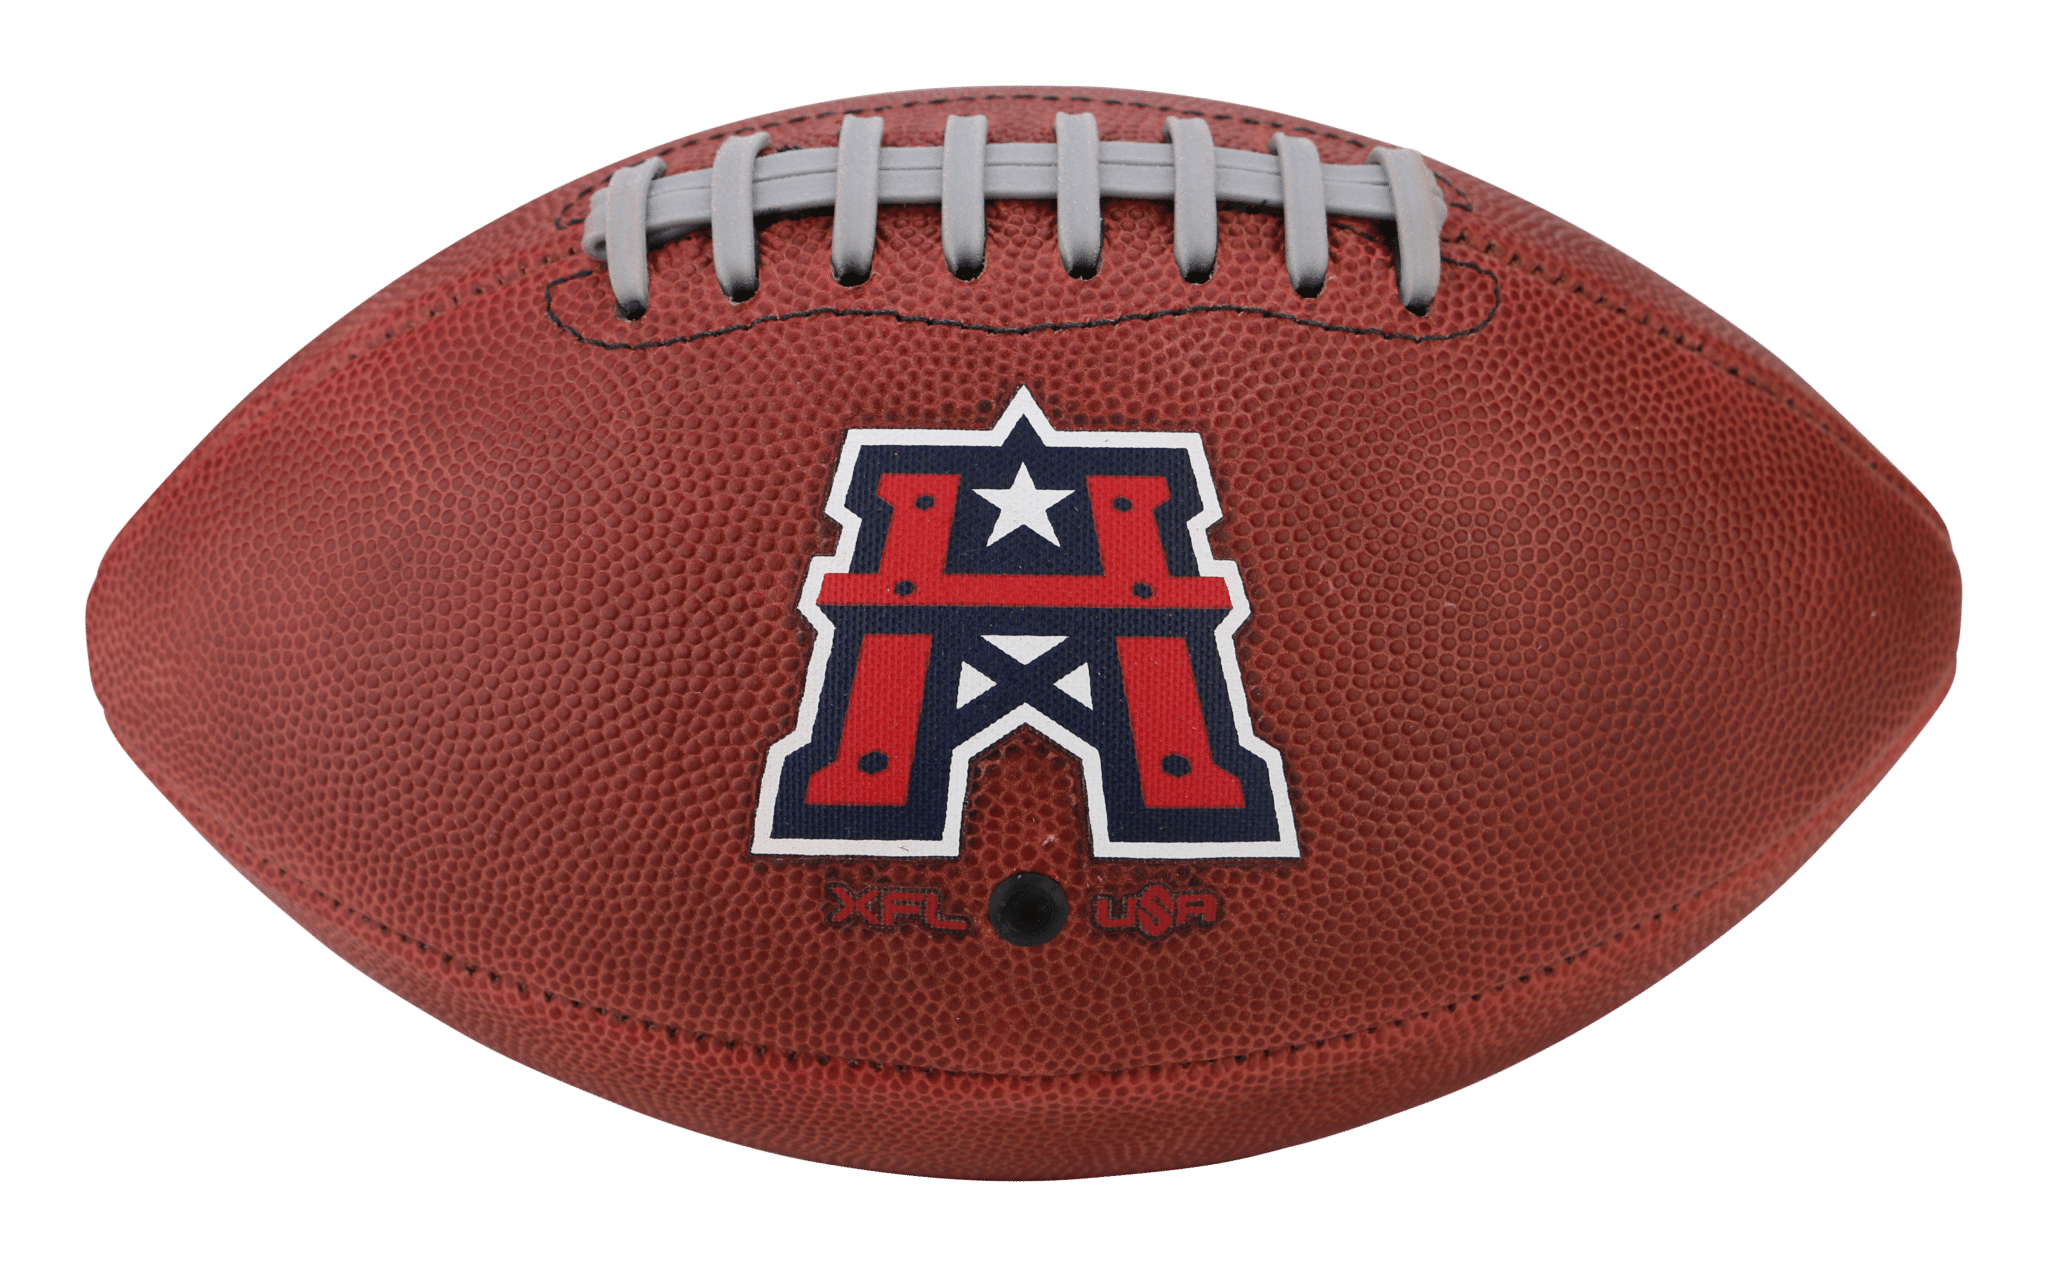 Houston Roughnecks  Official XFL Game Football - Big Game USA